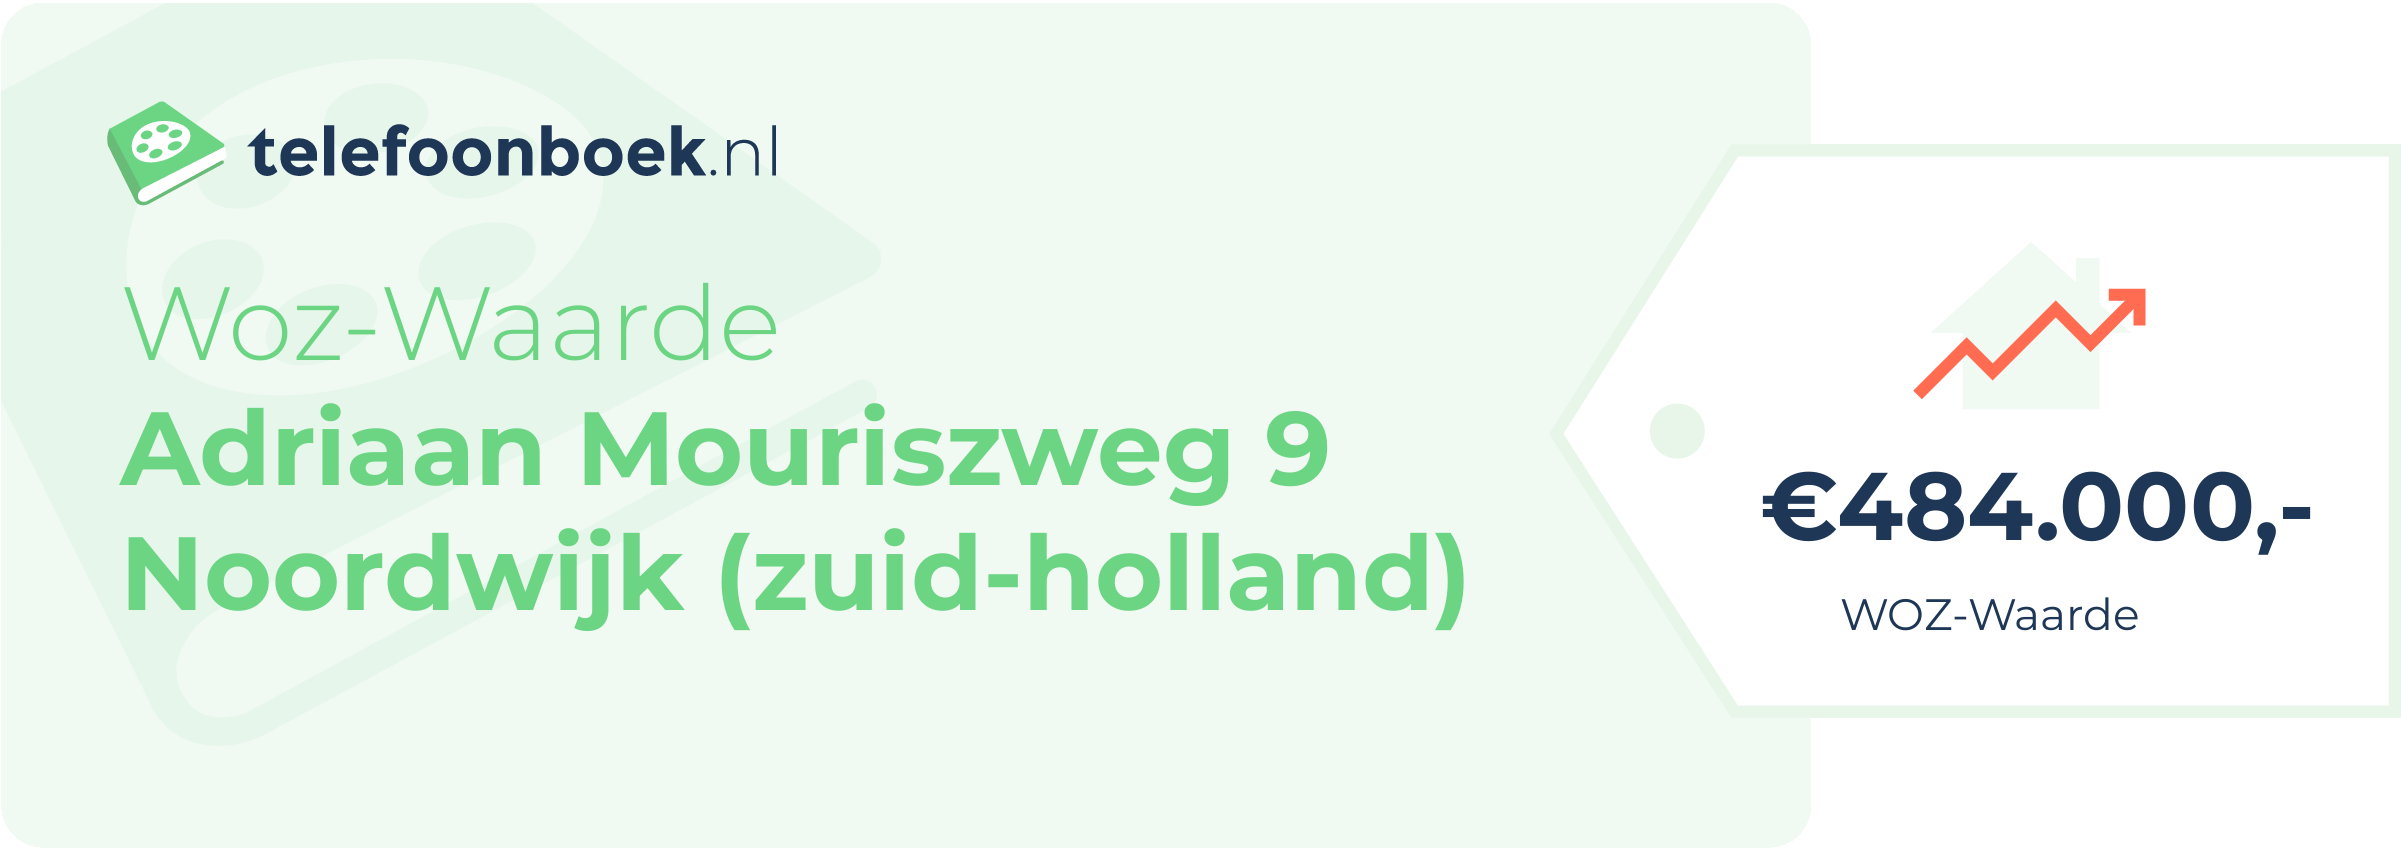 WOZ-waarde Adriaan Mouriszweg 9 Noordwijk (Zuid-Holland)